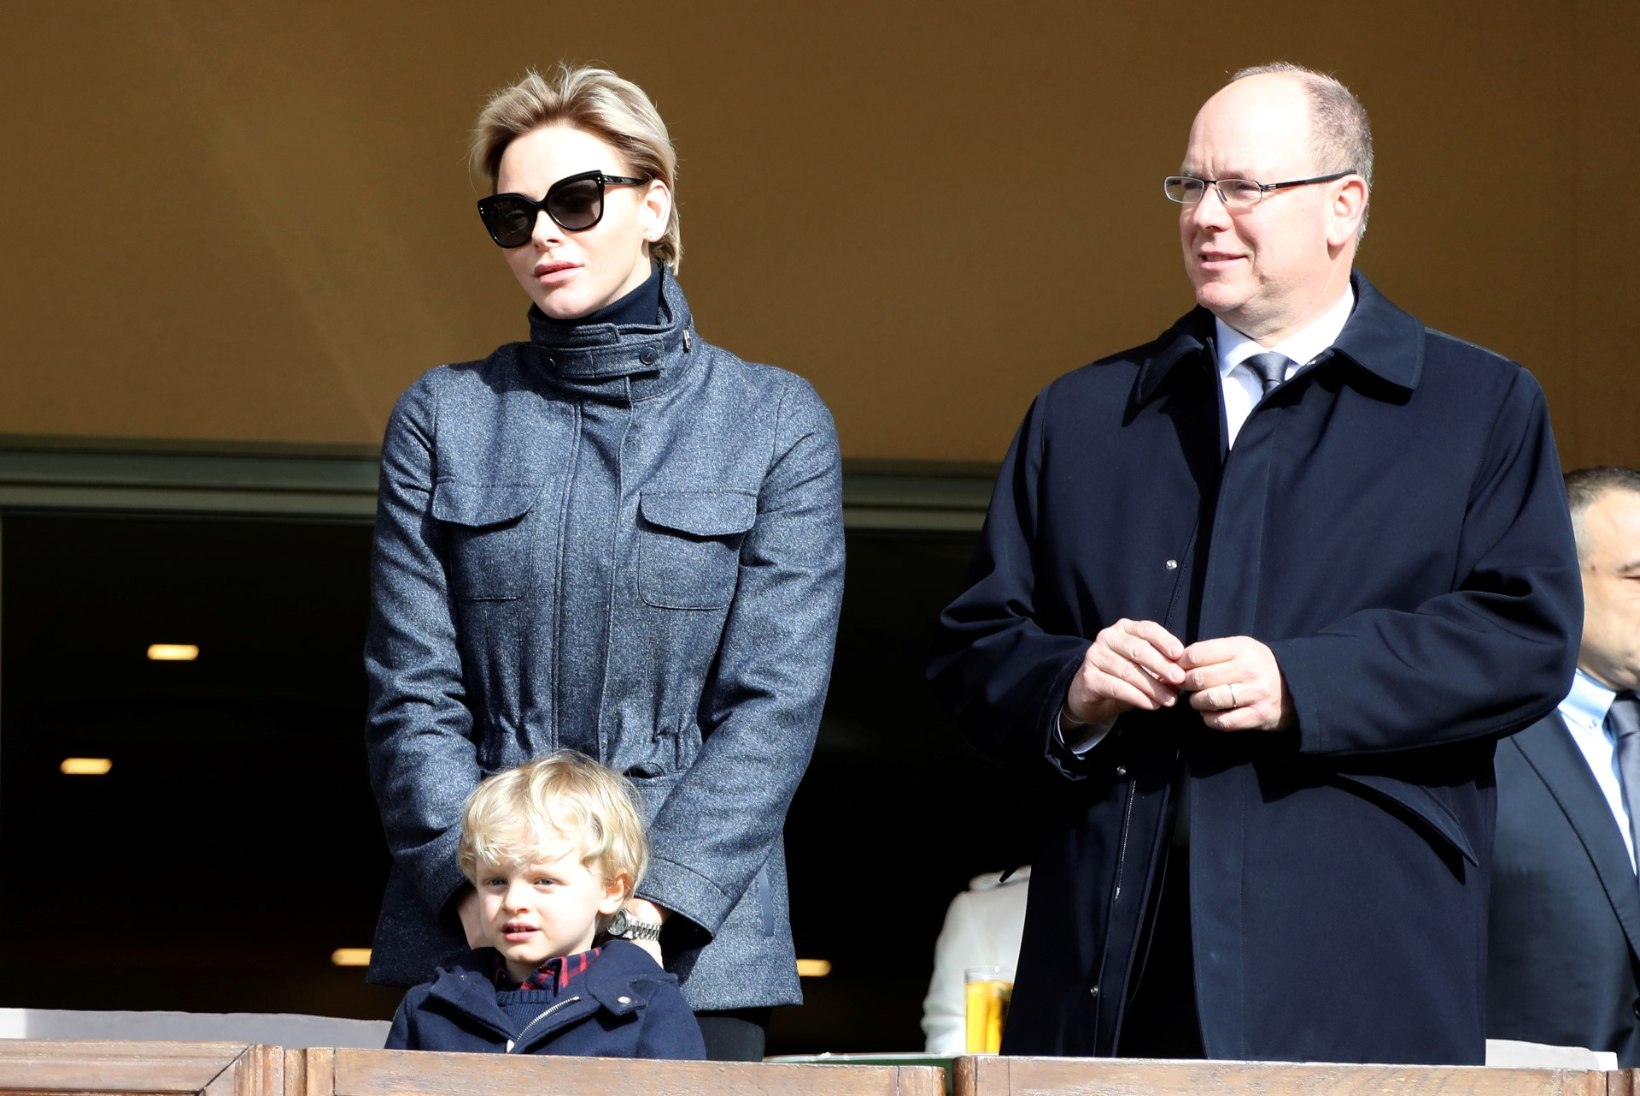 Monaco vürstinna Charlene ammutas soenguinspiratsiooni 1990. aastatest